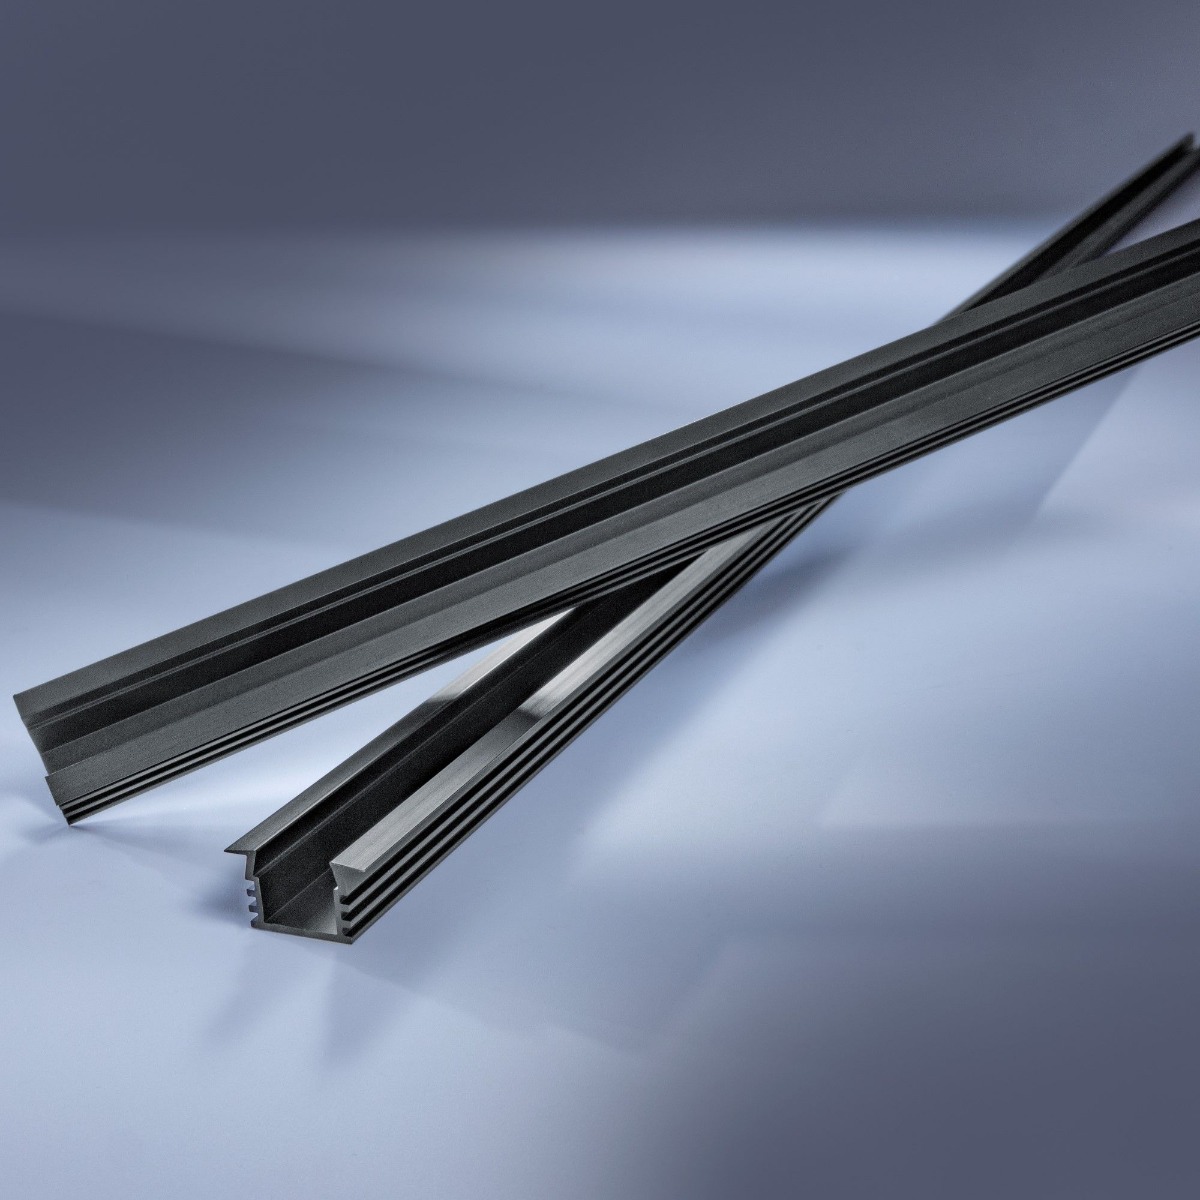 Perfil de aluminio Aluflex profundo para empotrar Flexible tiras LED 102cm negro anodizado